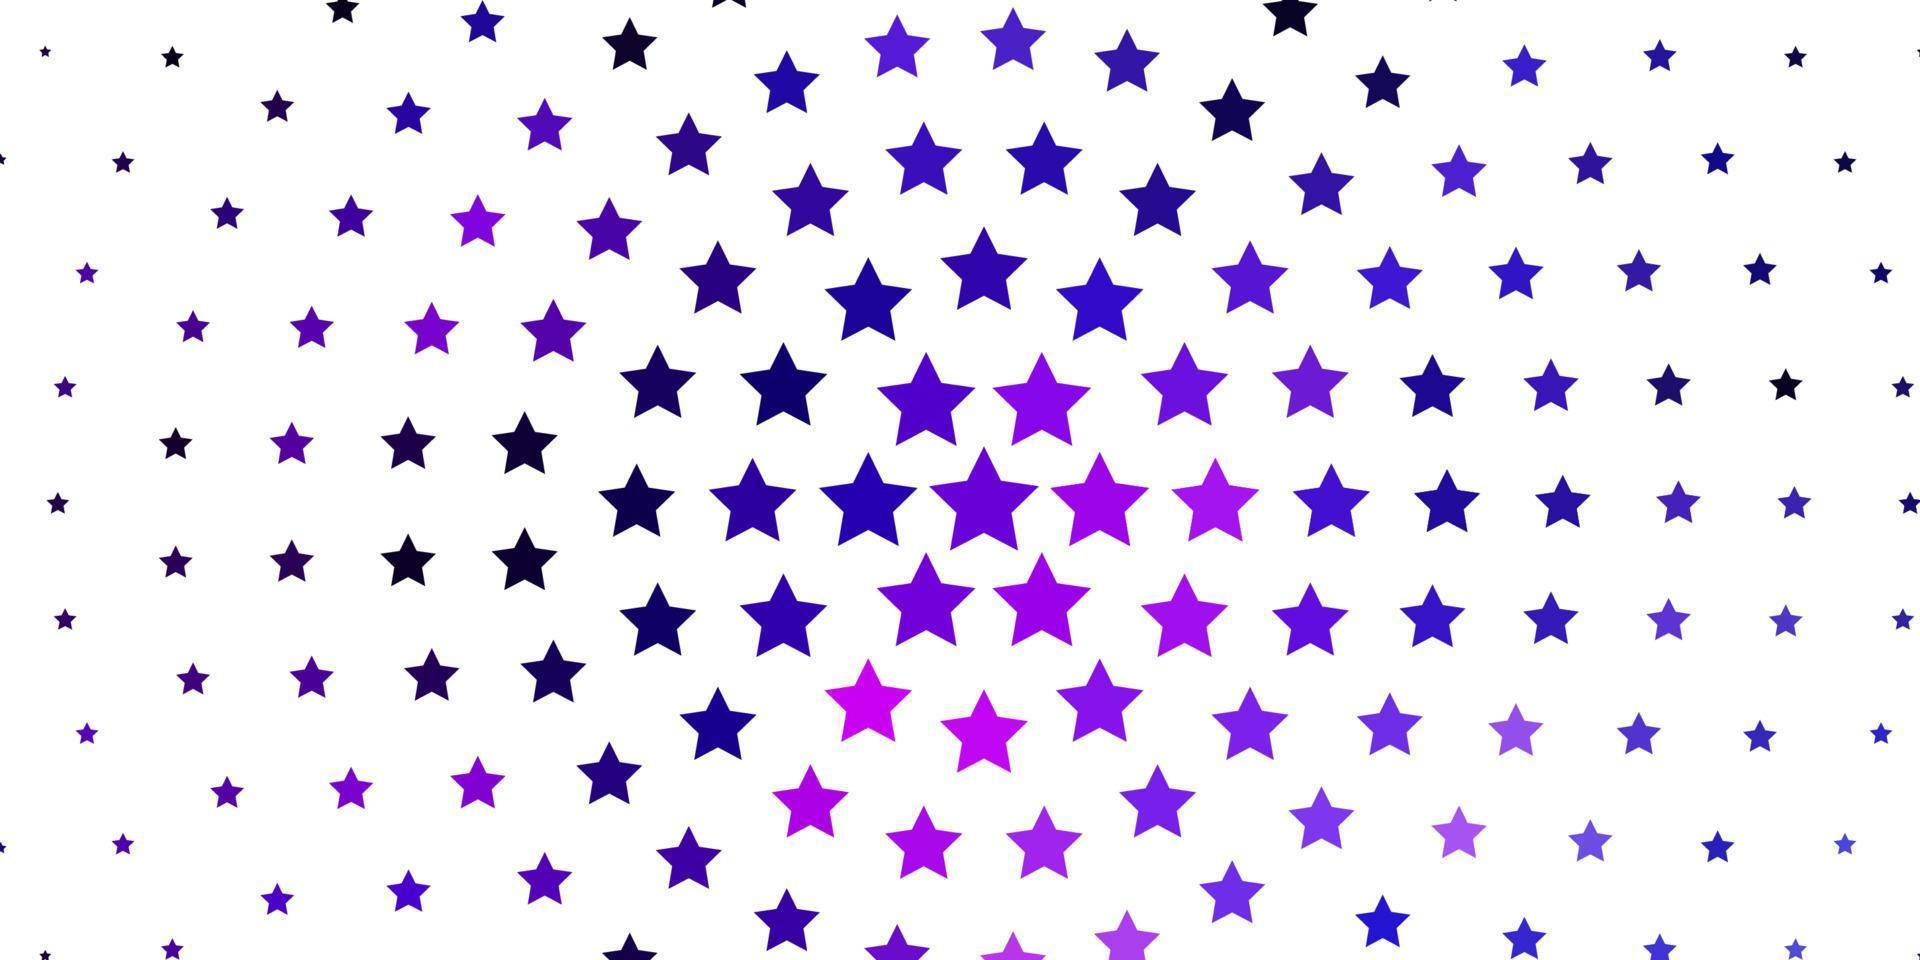 de fundo vector rosa claro roxo com estrelas coloridas.